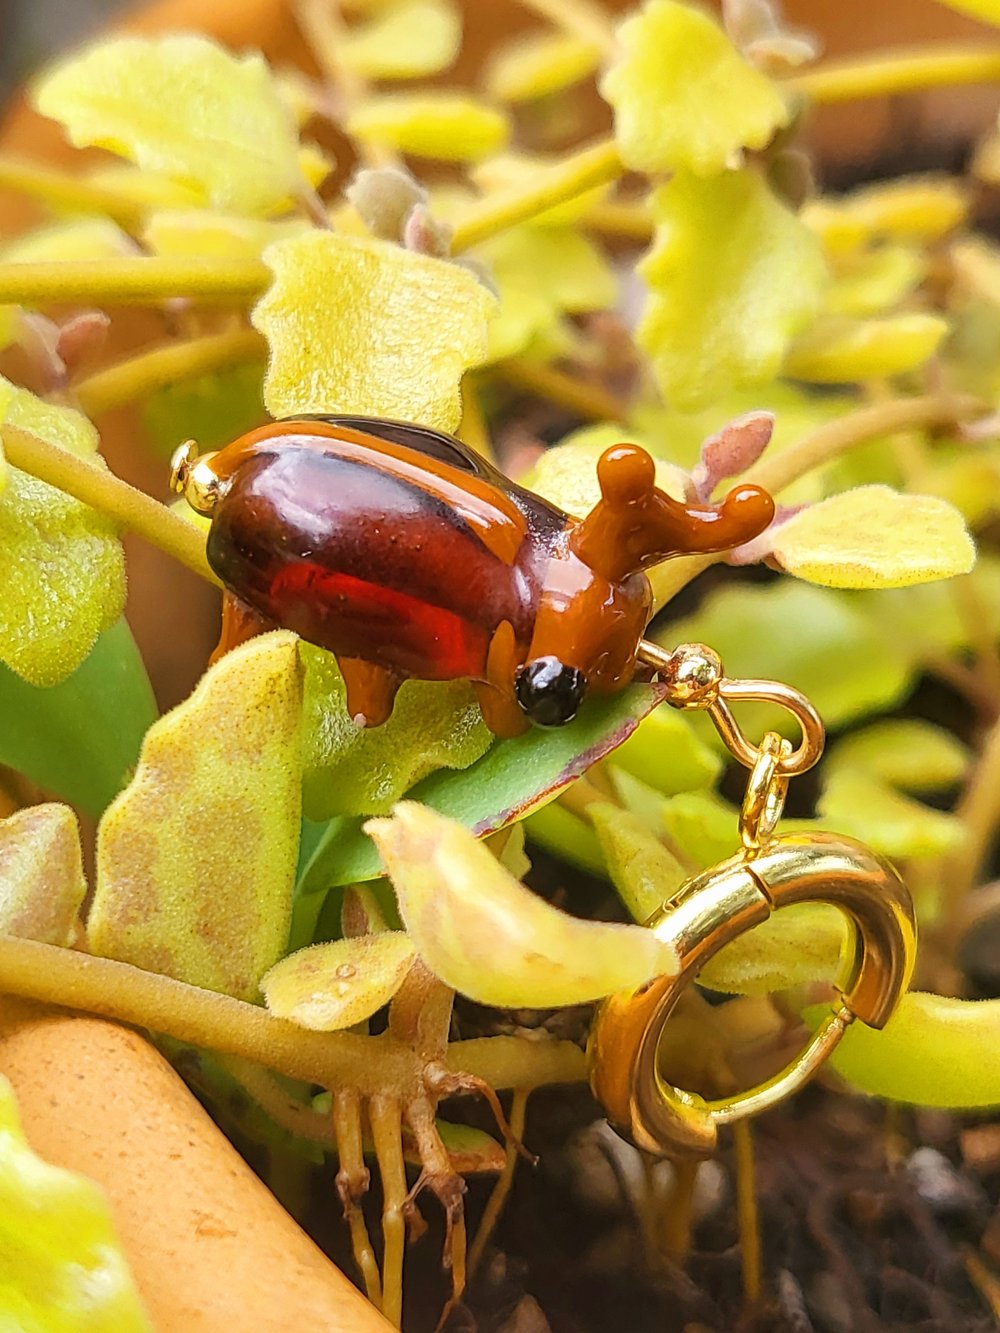 Image of Stag beetles